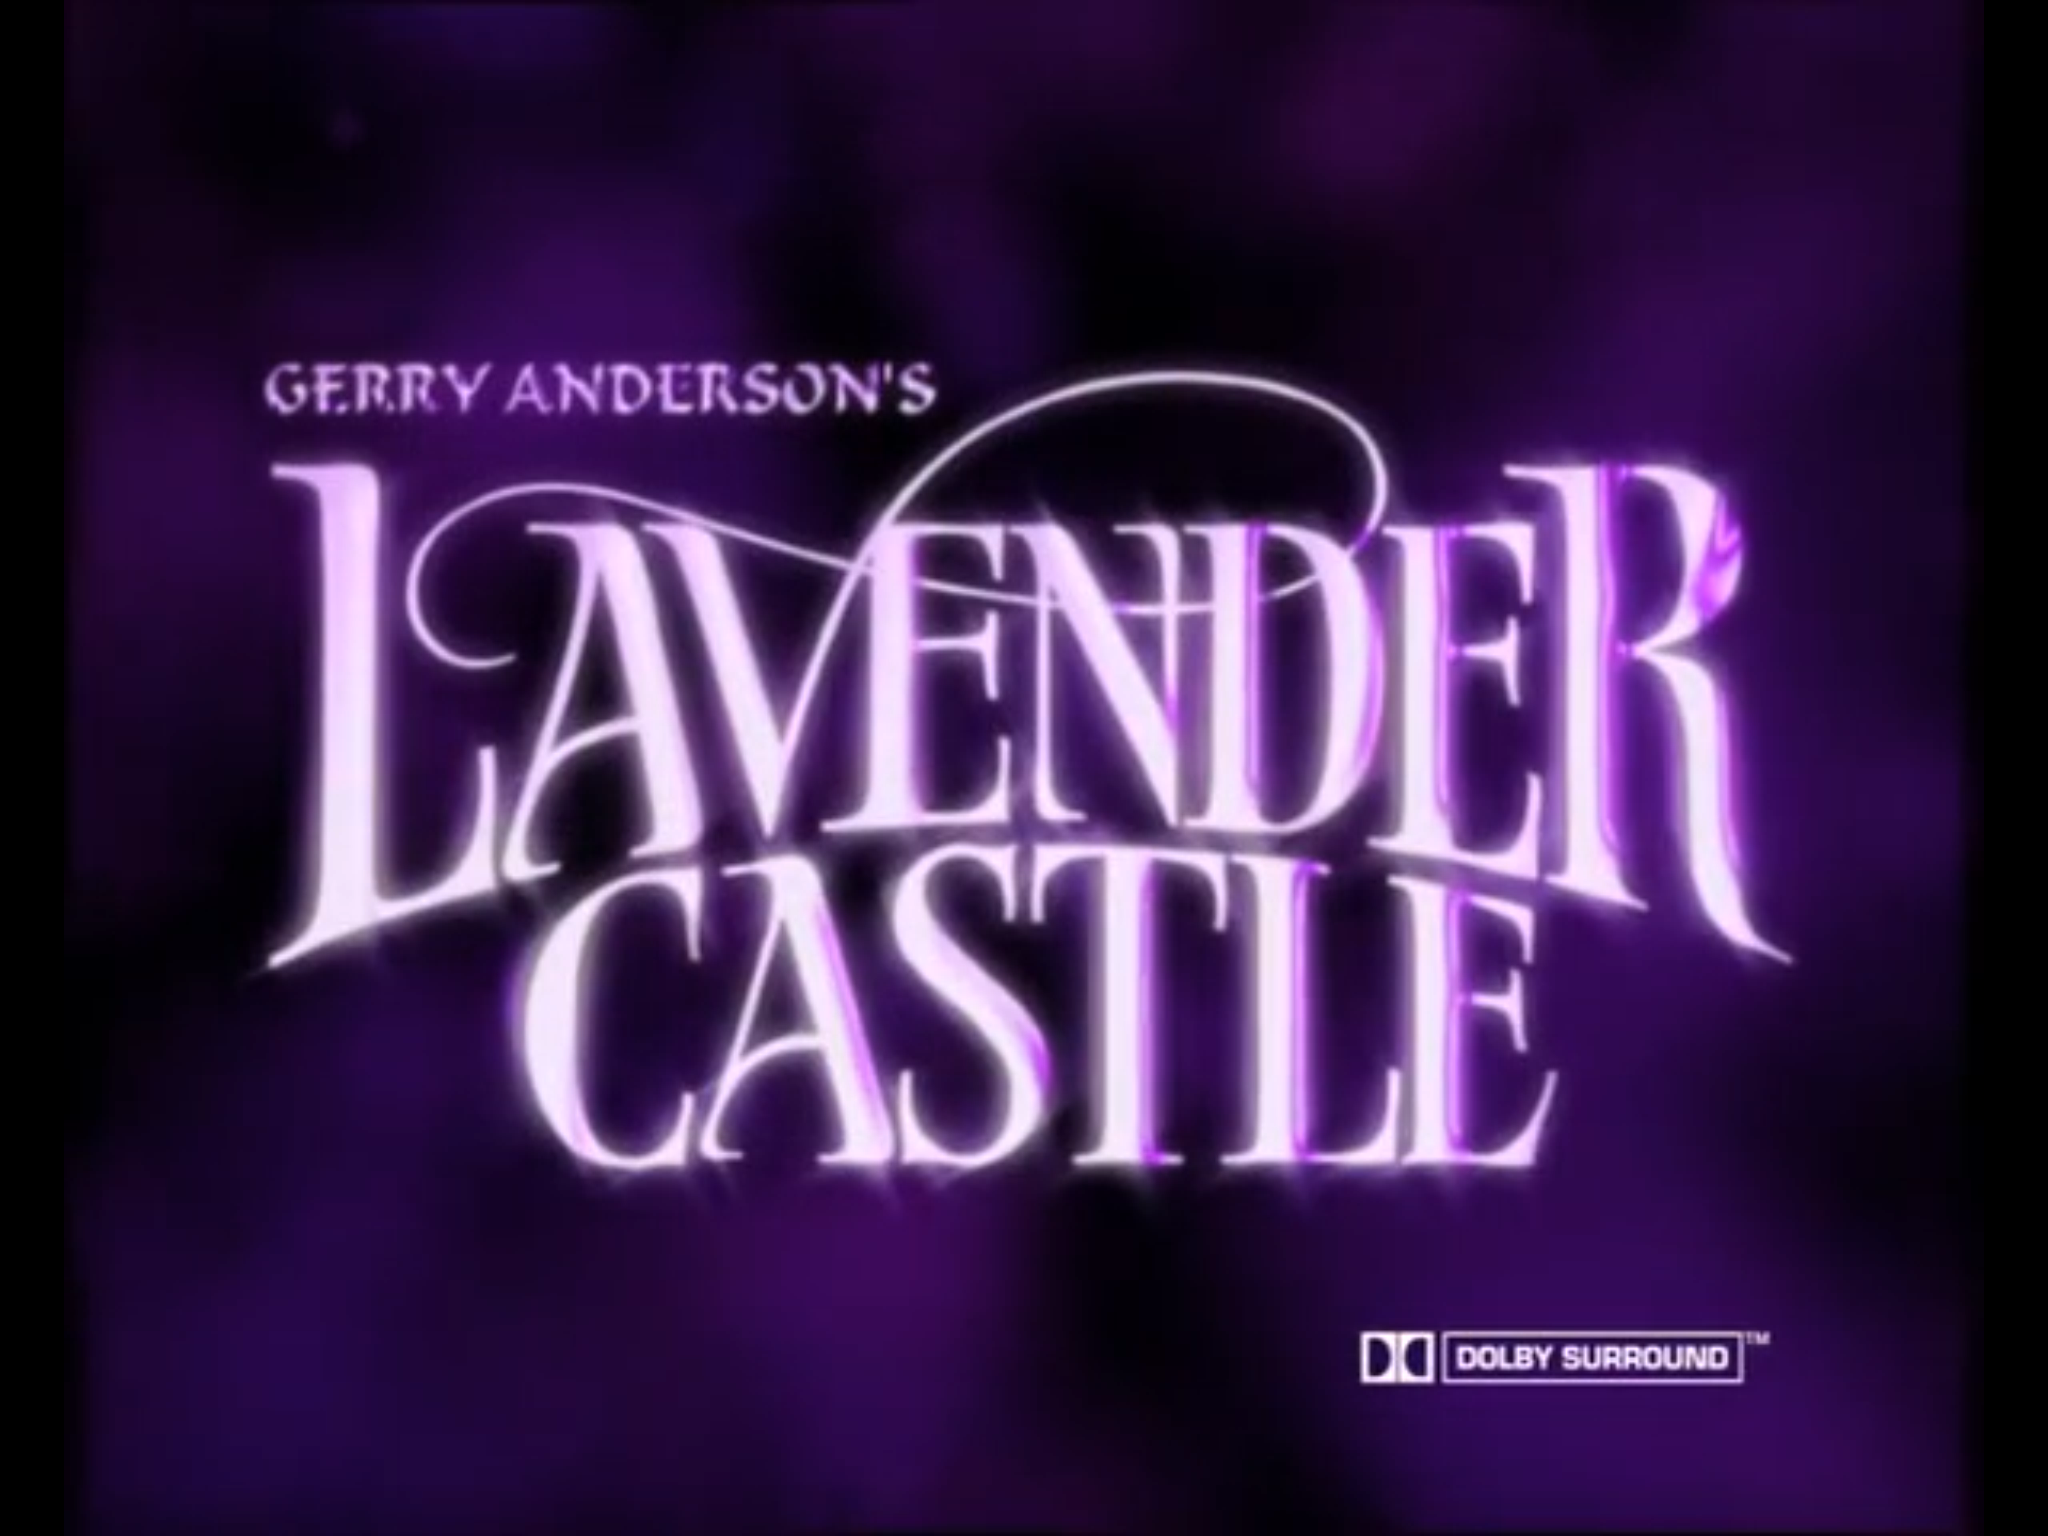 Lavender castle title.png